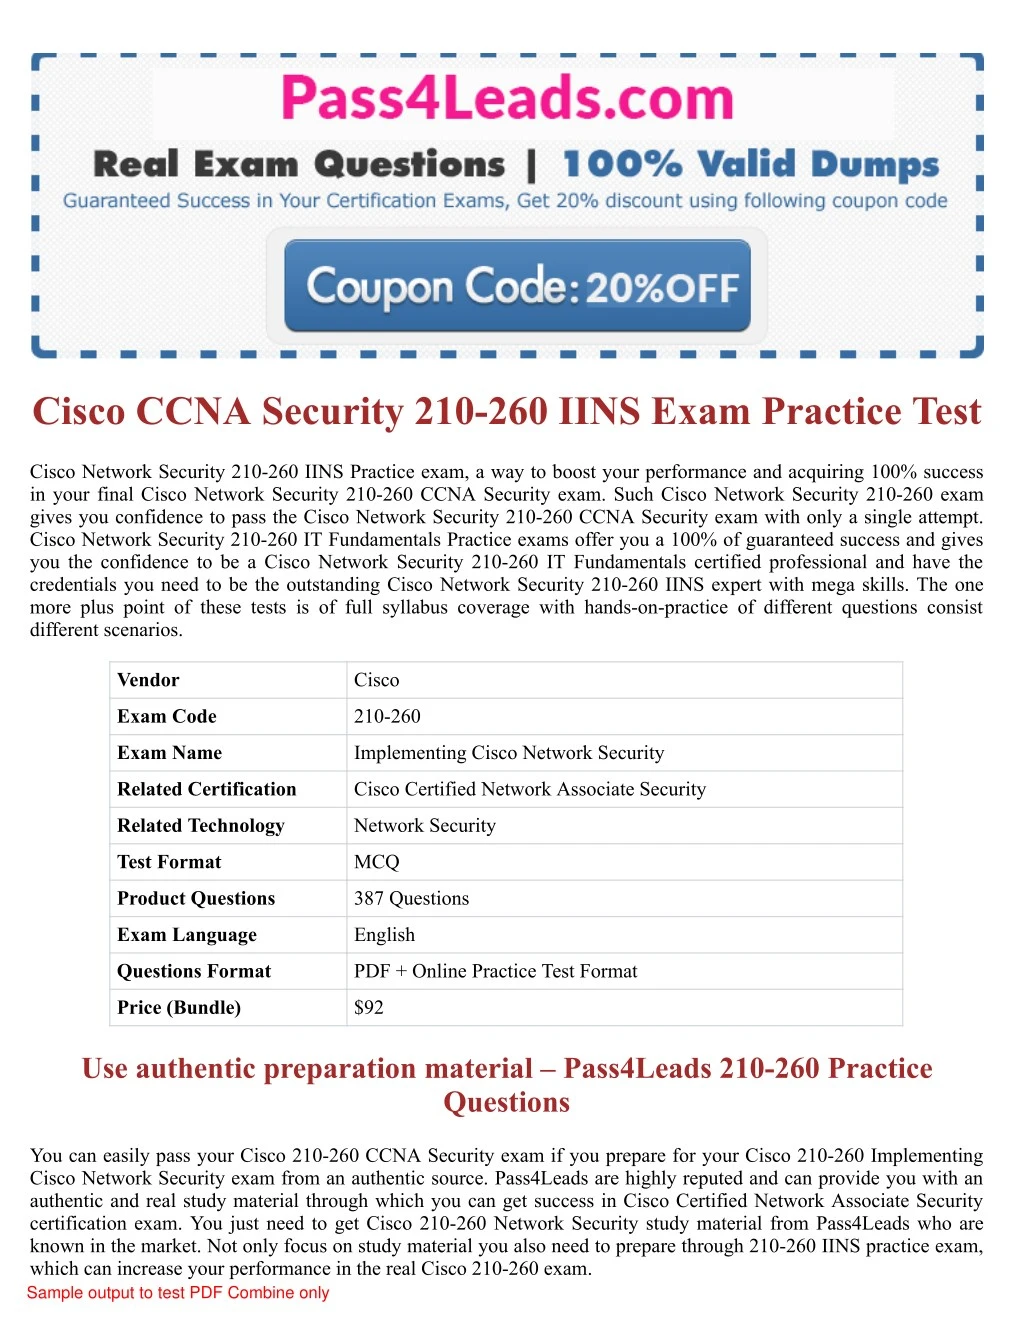 cisco ccna security 210 260 iins exam practice